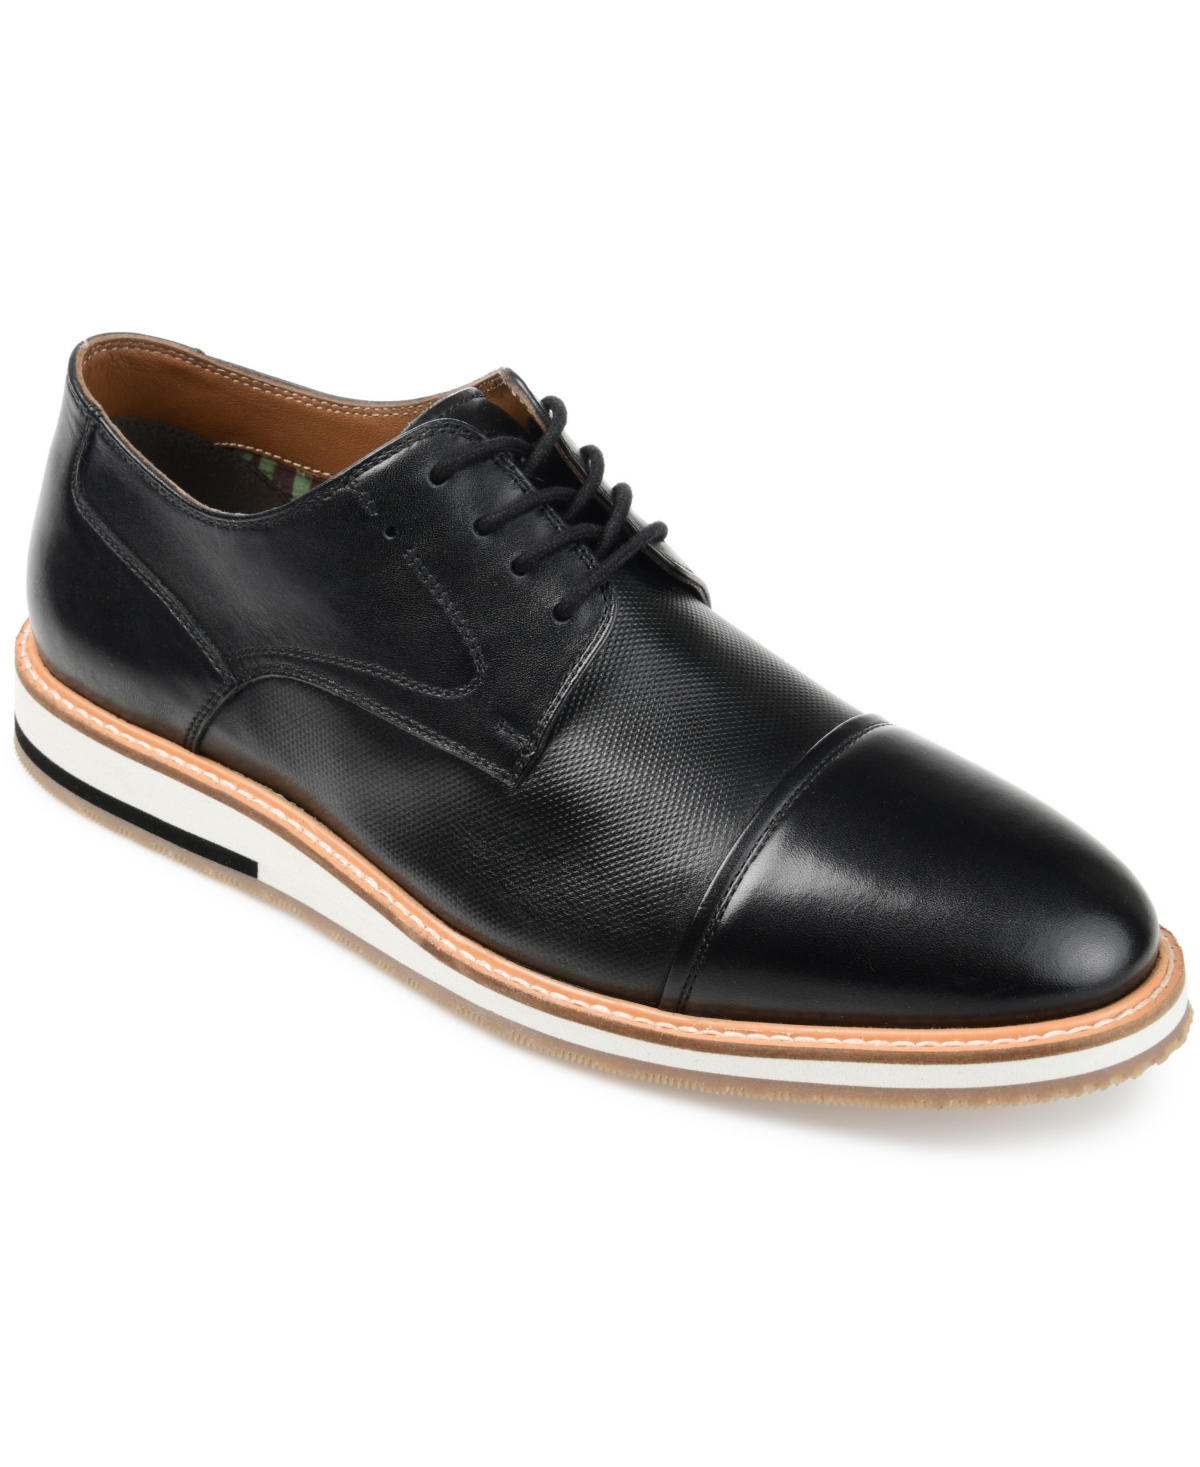 Men's Hartley Cap Toe Derby Shoe - Black